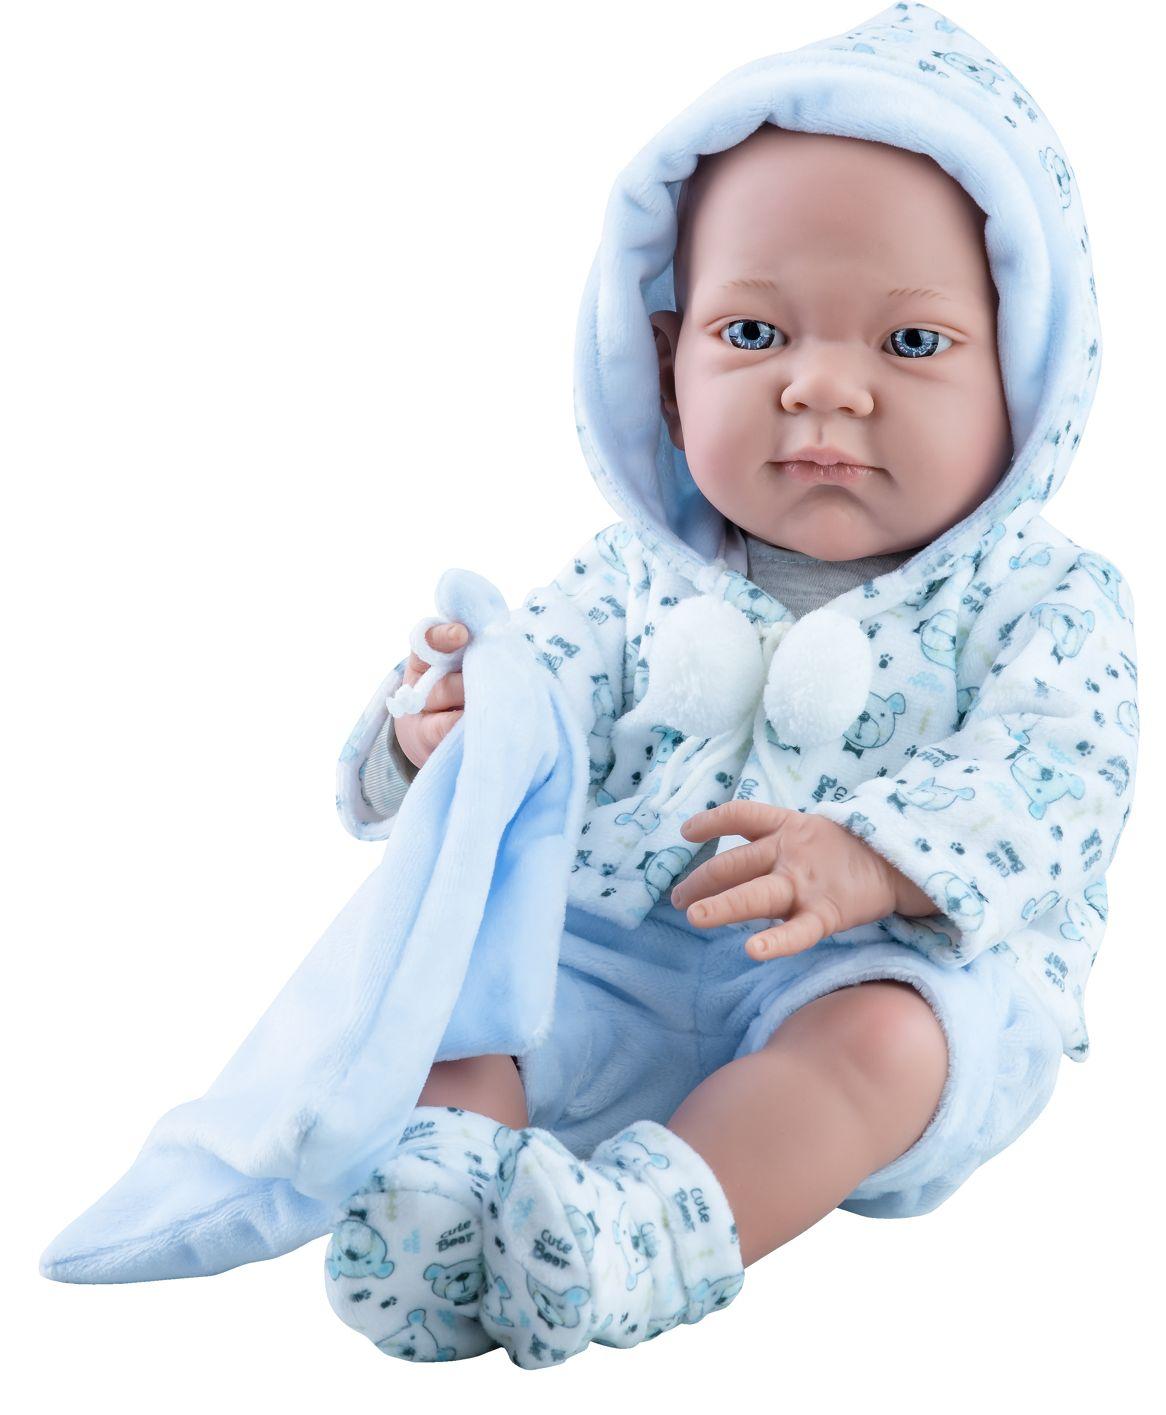 Realistické miminko - kluk - Pikolin v kabátku s bambulkami od firmy Paola Reina